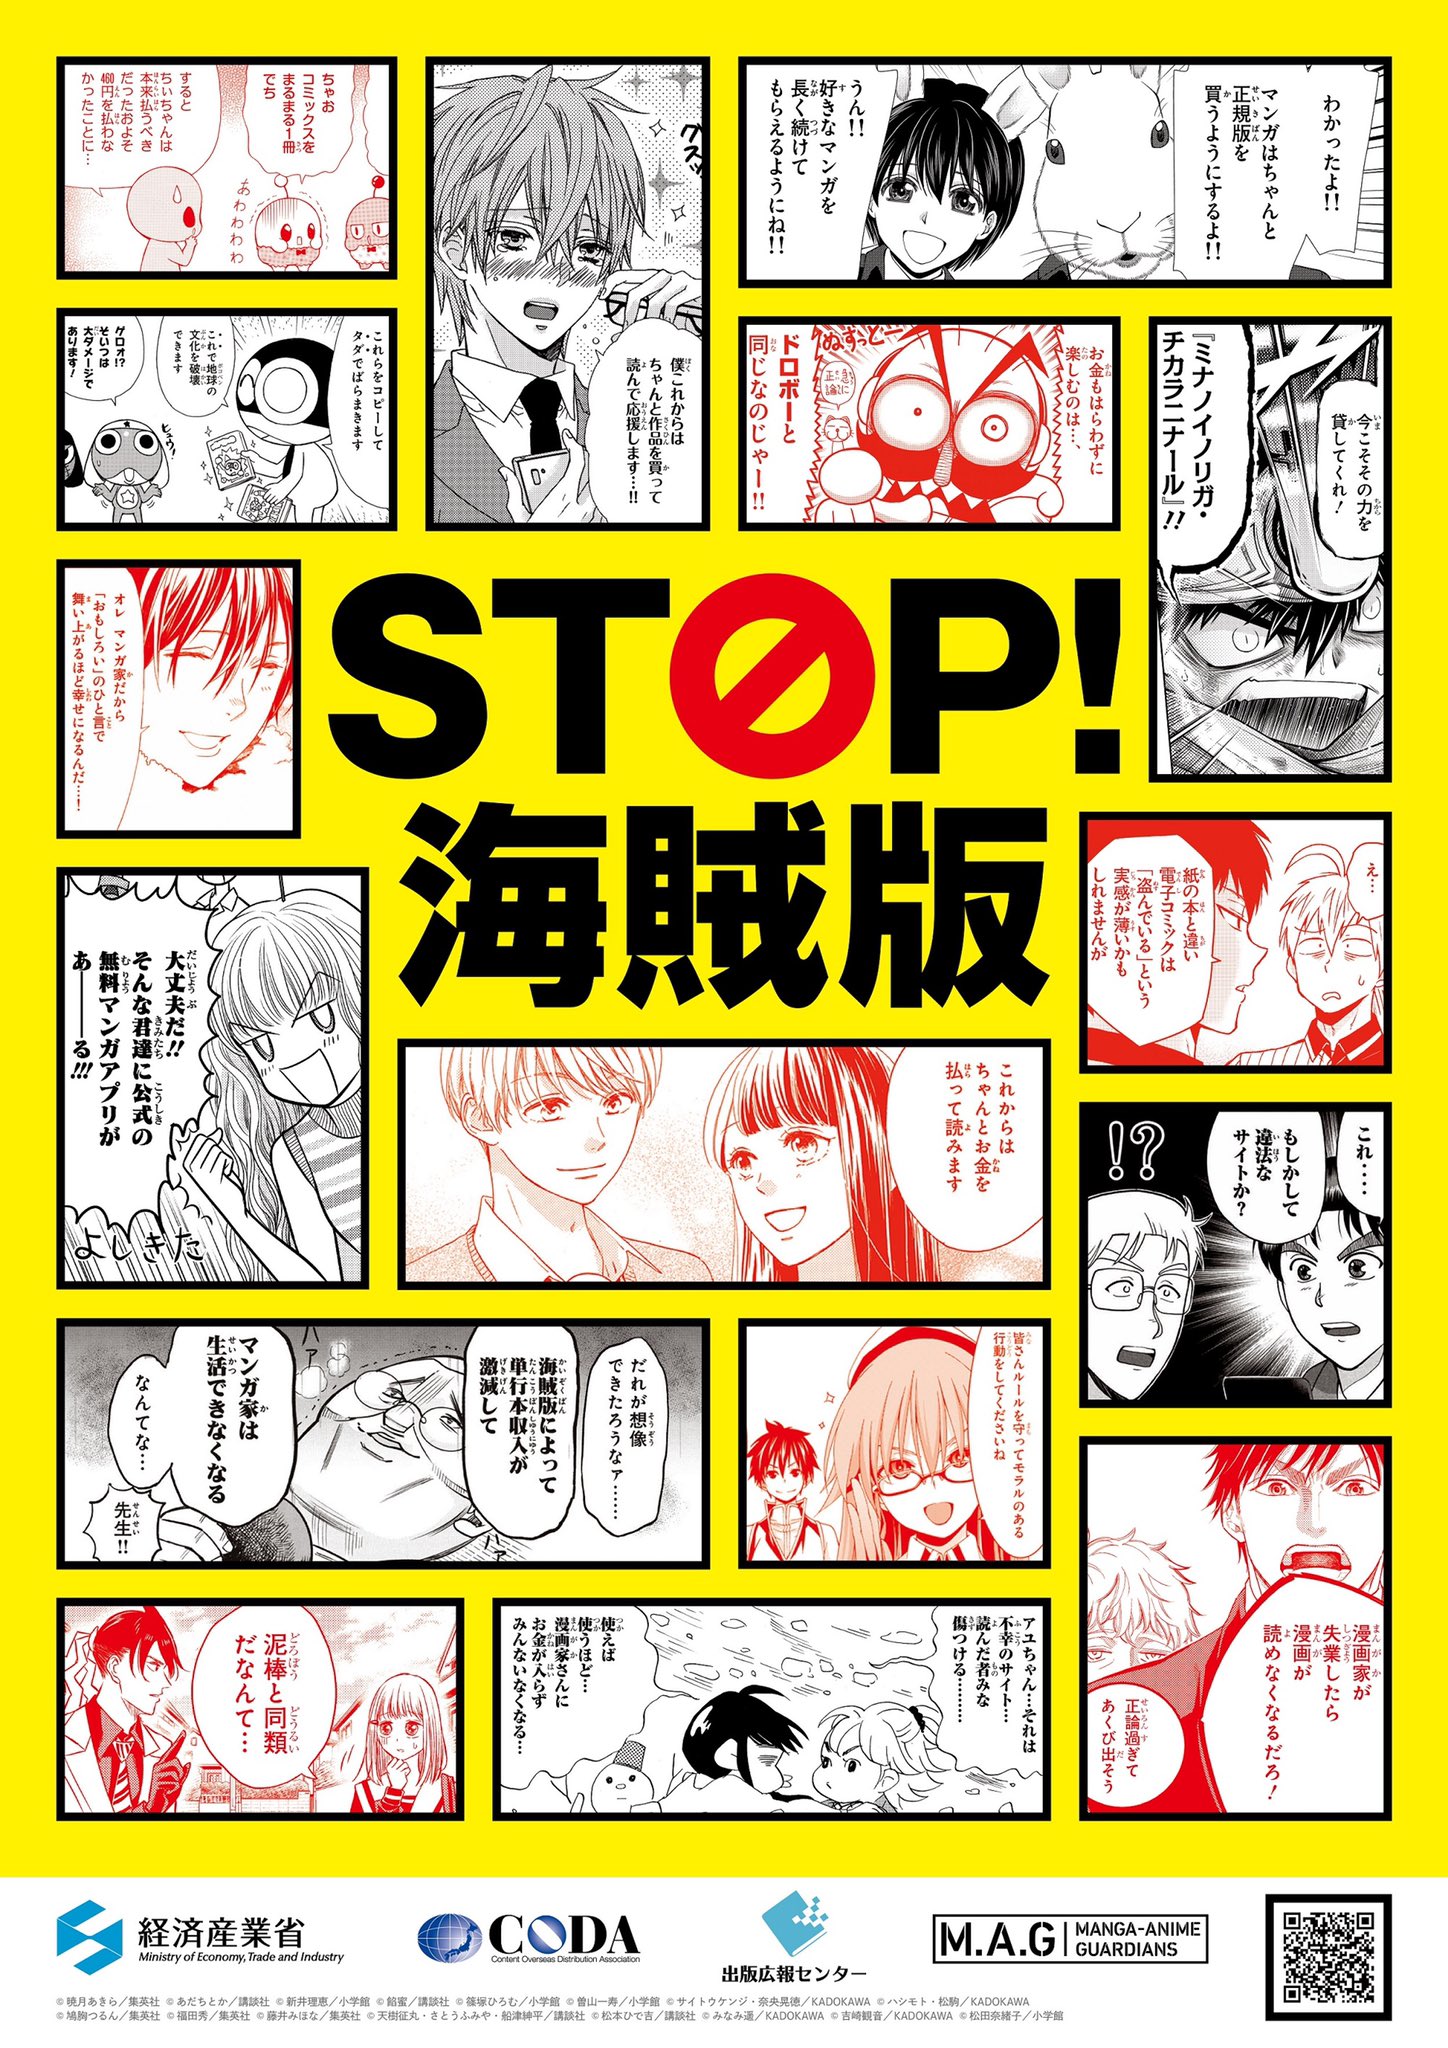 STOP! PIRACY (EN) manga